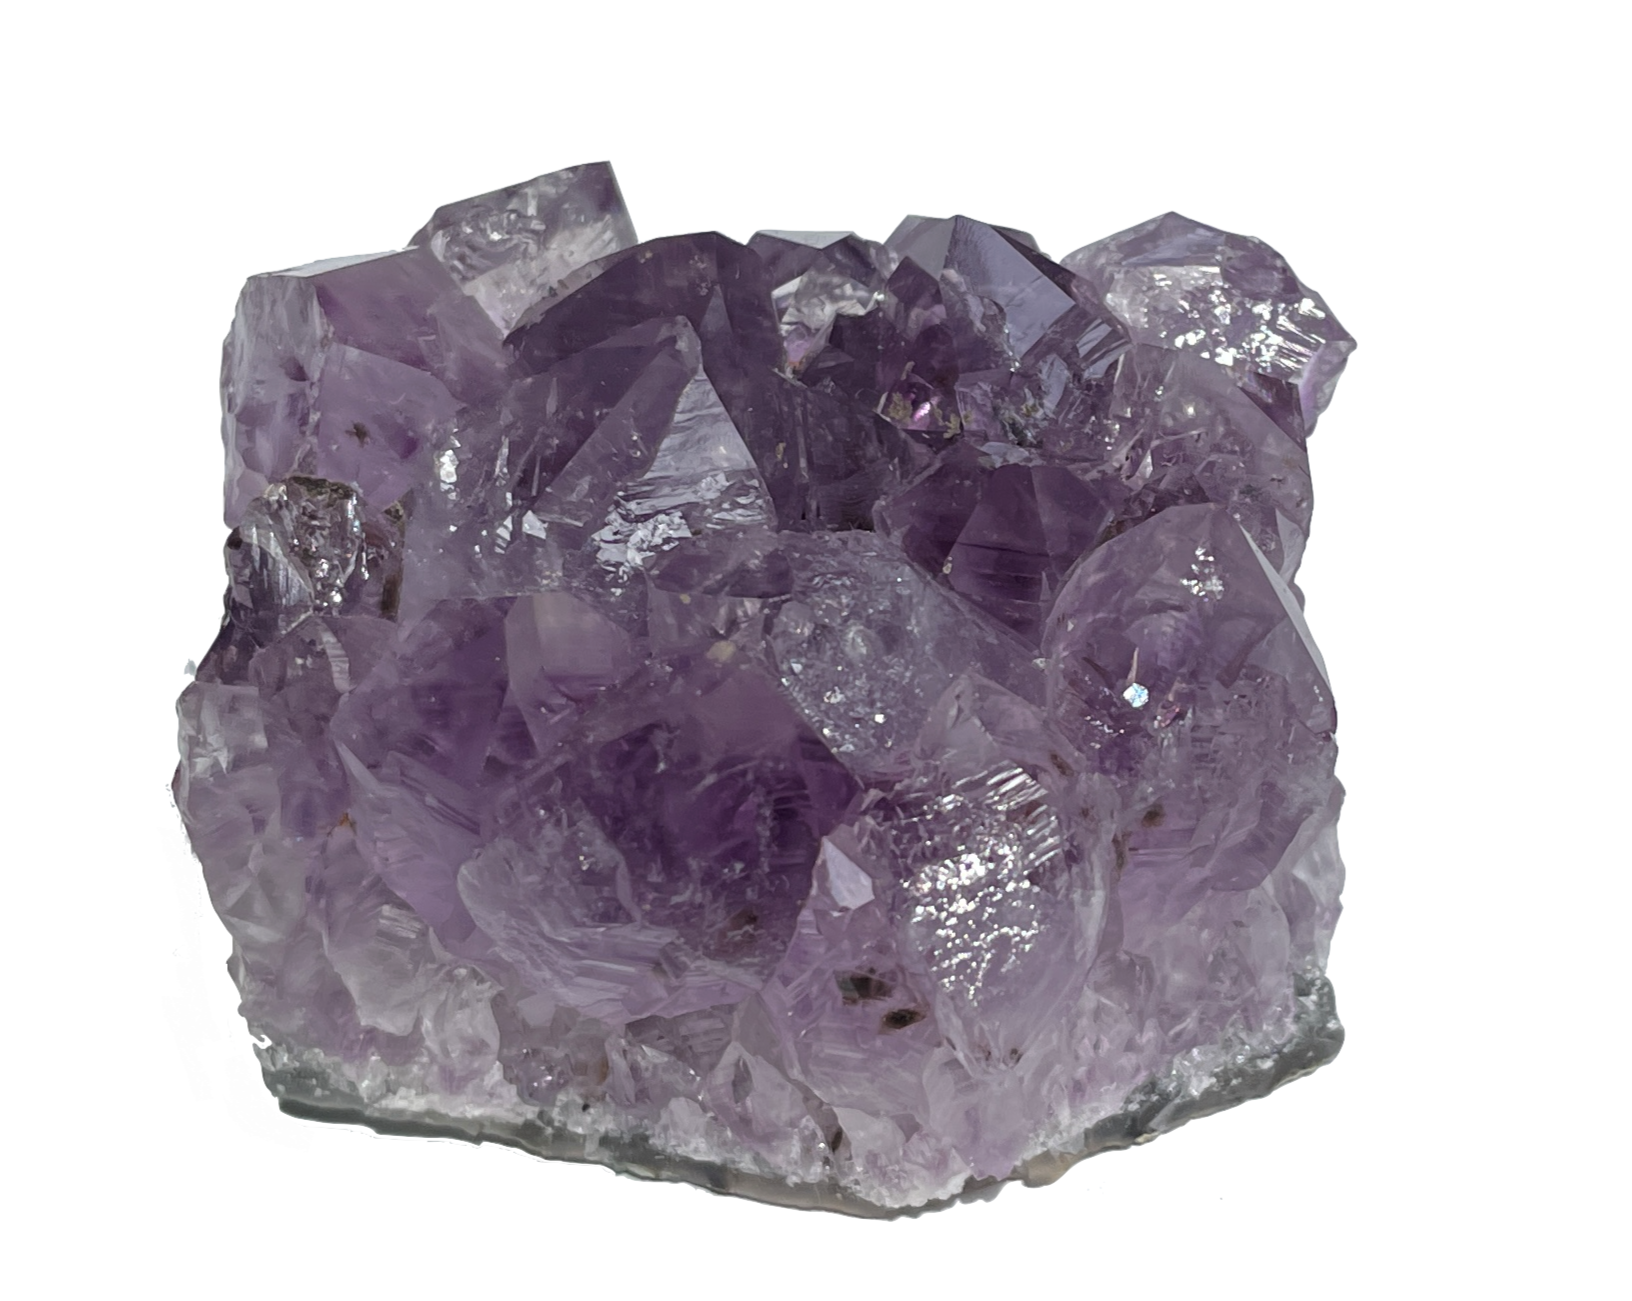 Amethyst Stufe - Amethyst Kristalle zum Aufladen - Drusensegment Uruguay